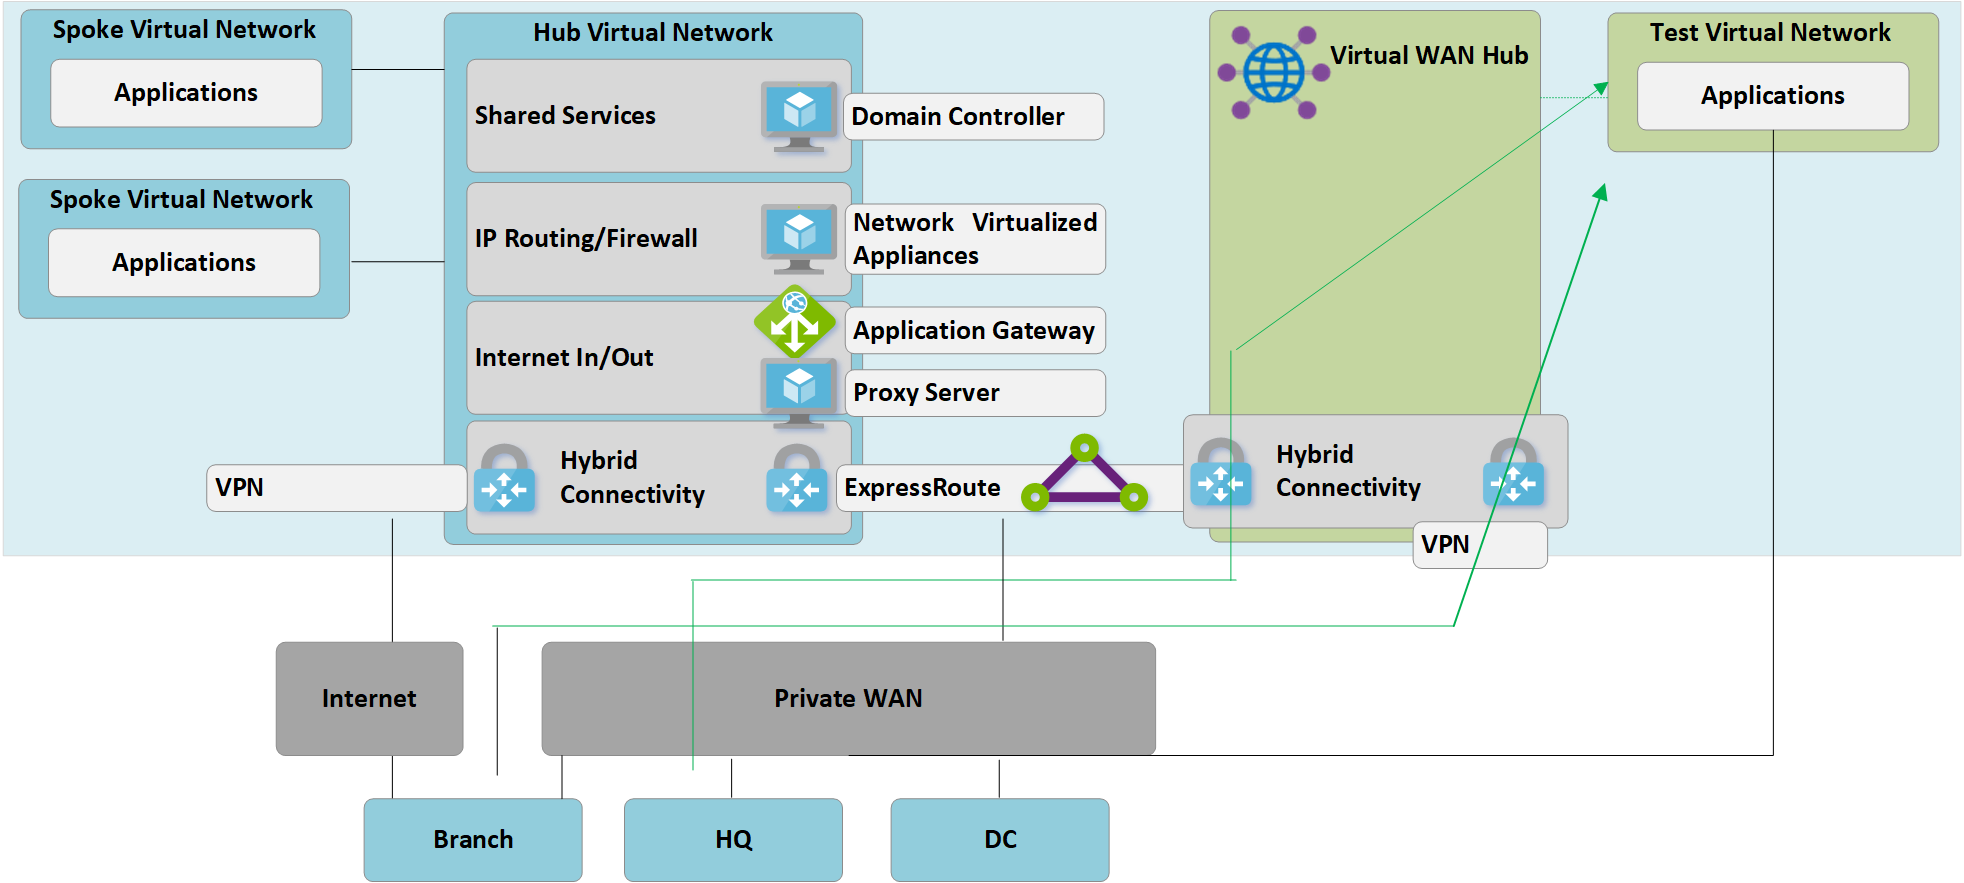 Testen der Hybridkonnektivität über Virtual WAN